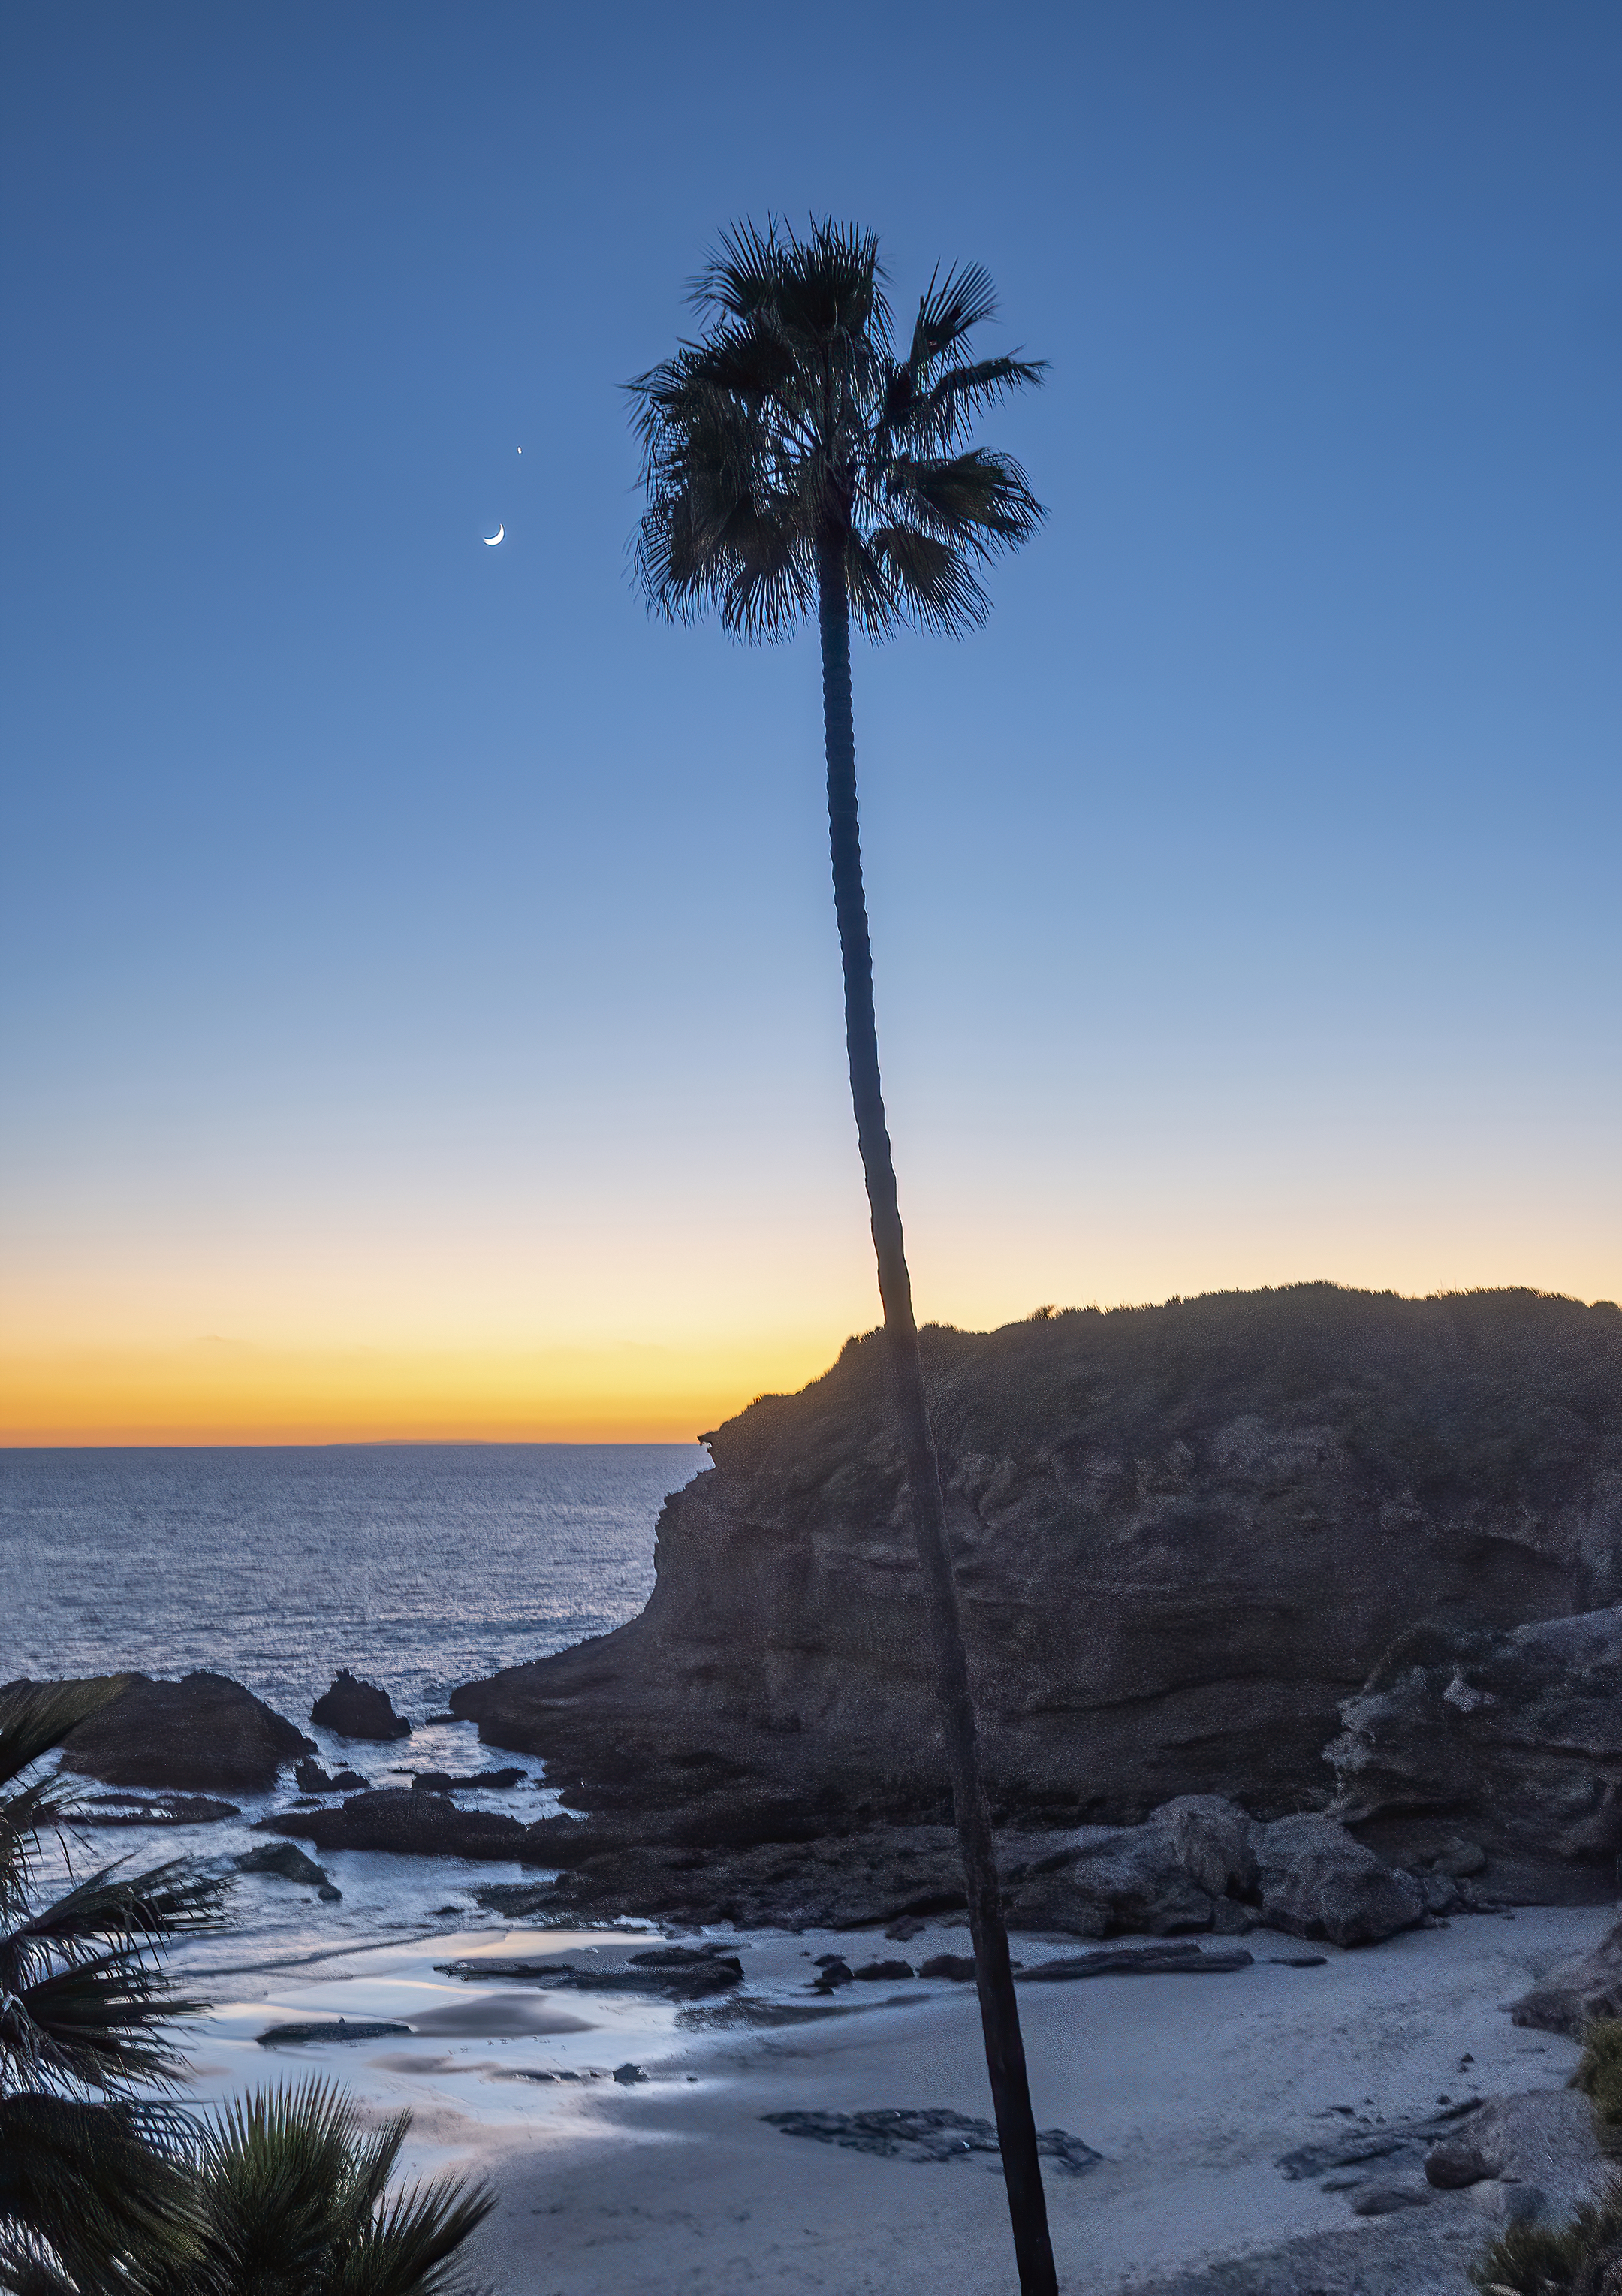  Three Arch Bay Beach Laguna Beach California sunset moon venus